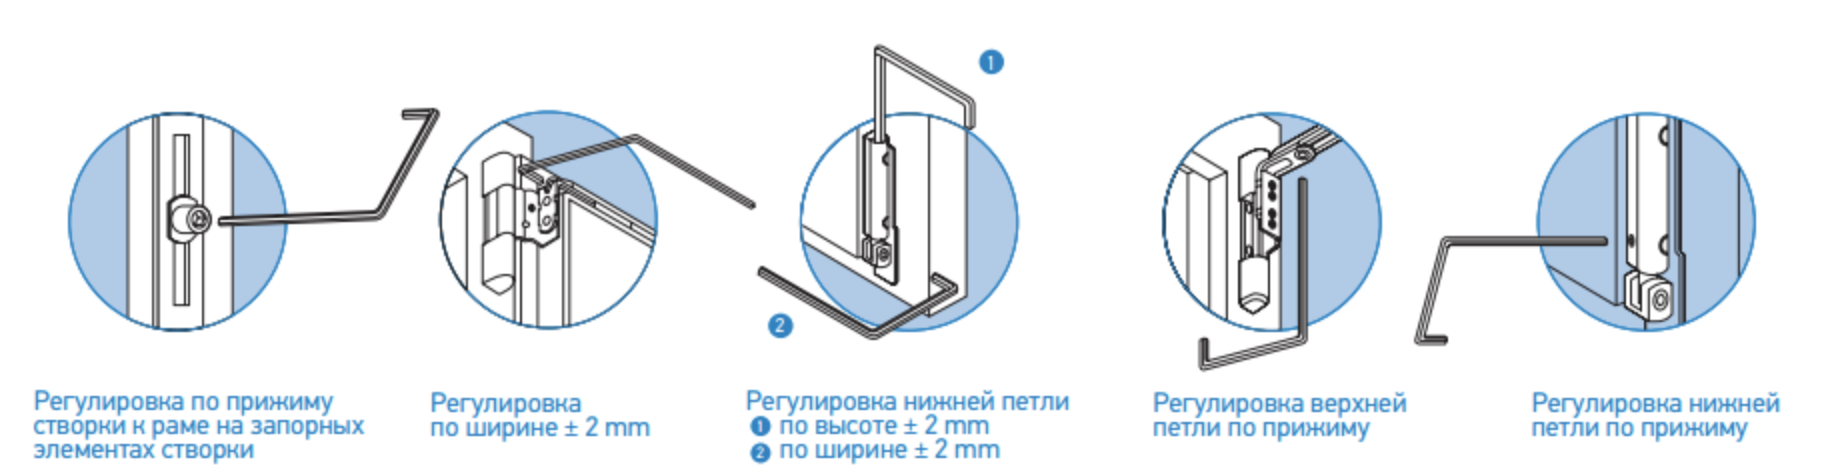 Как отрегулировать пластиковую балконную дверь (своими руками)